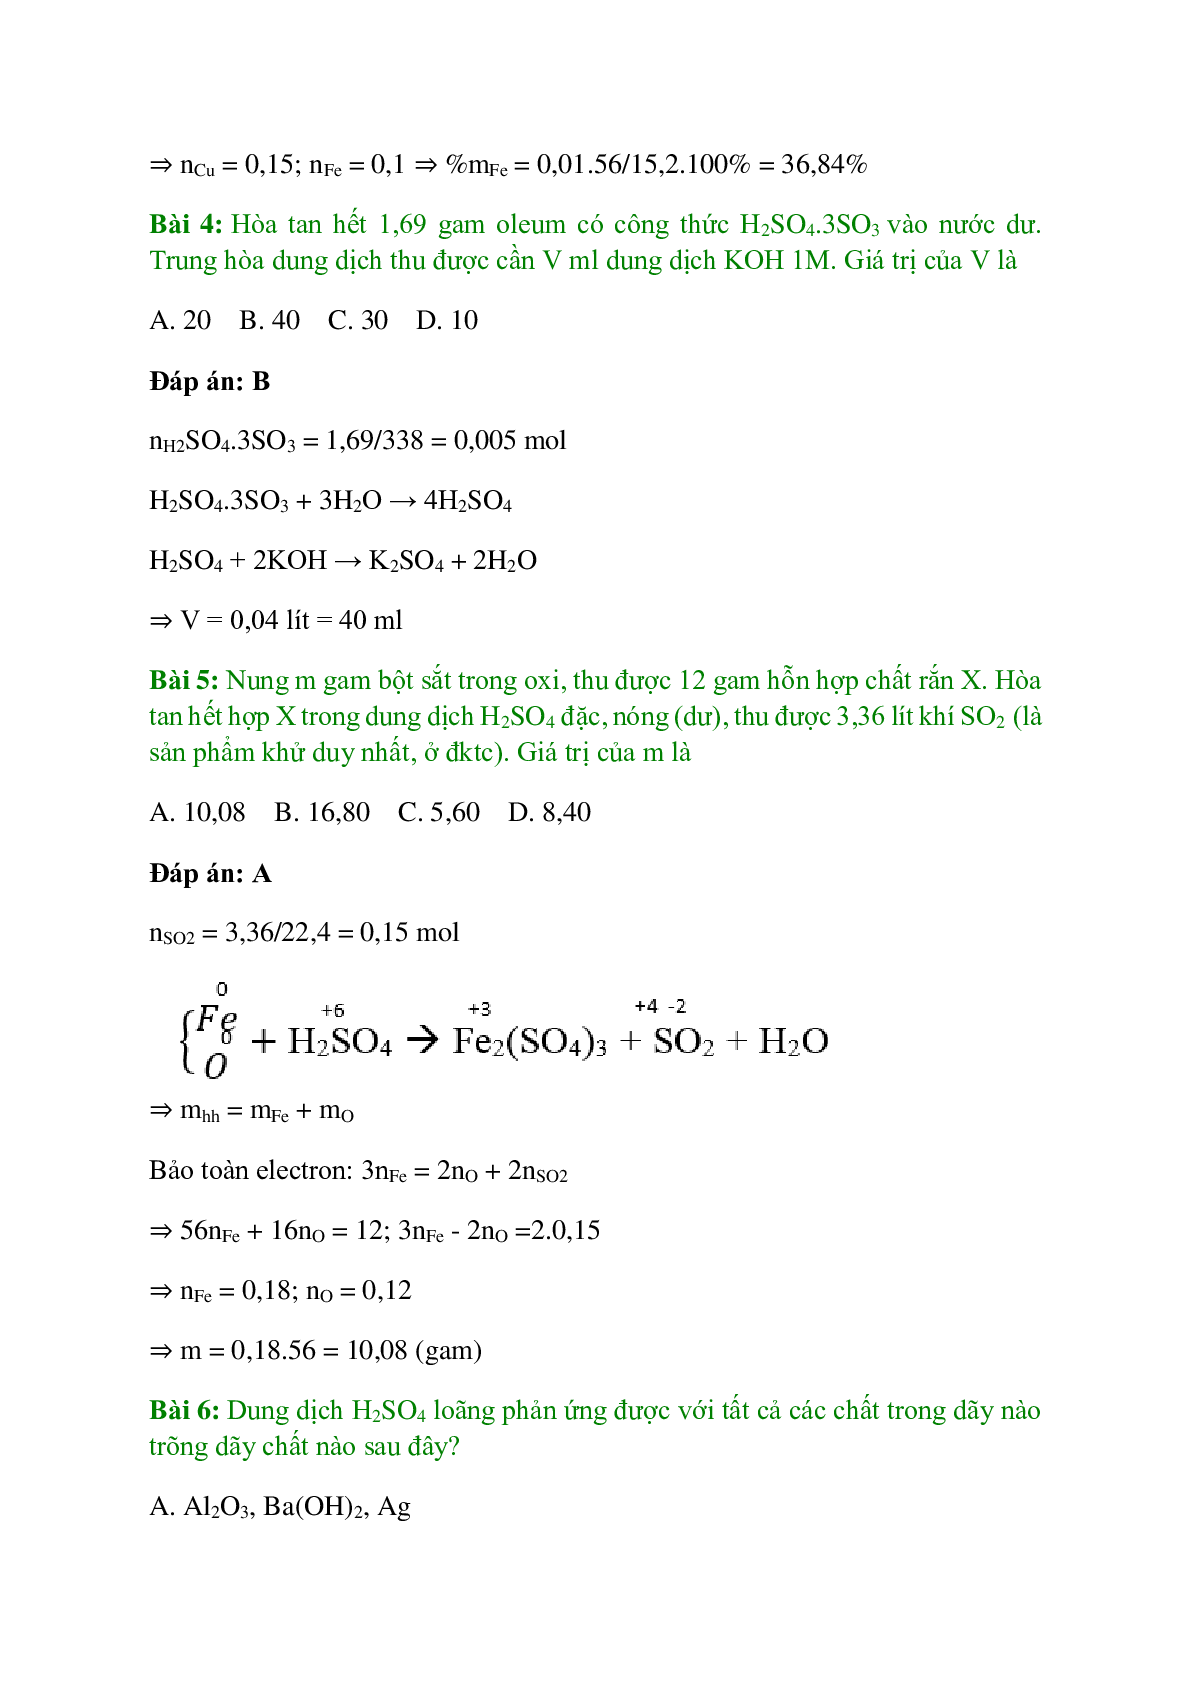 Trắc nghiệm Luyện tập: Oxi và lưu huỳnh có đáp án - Hóa học 10 (trang 2)